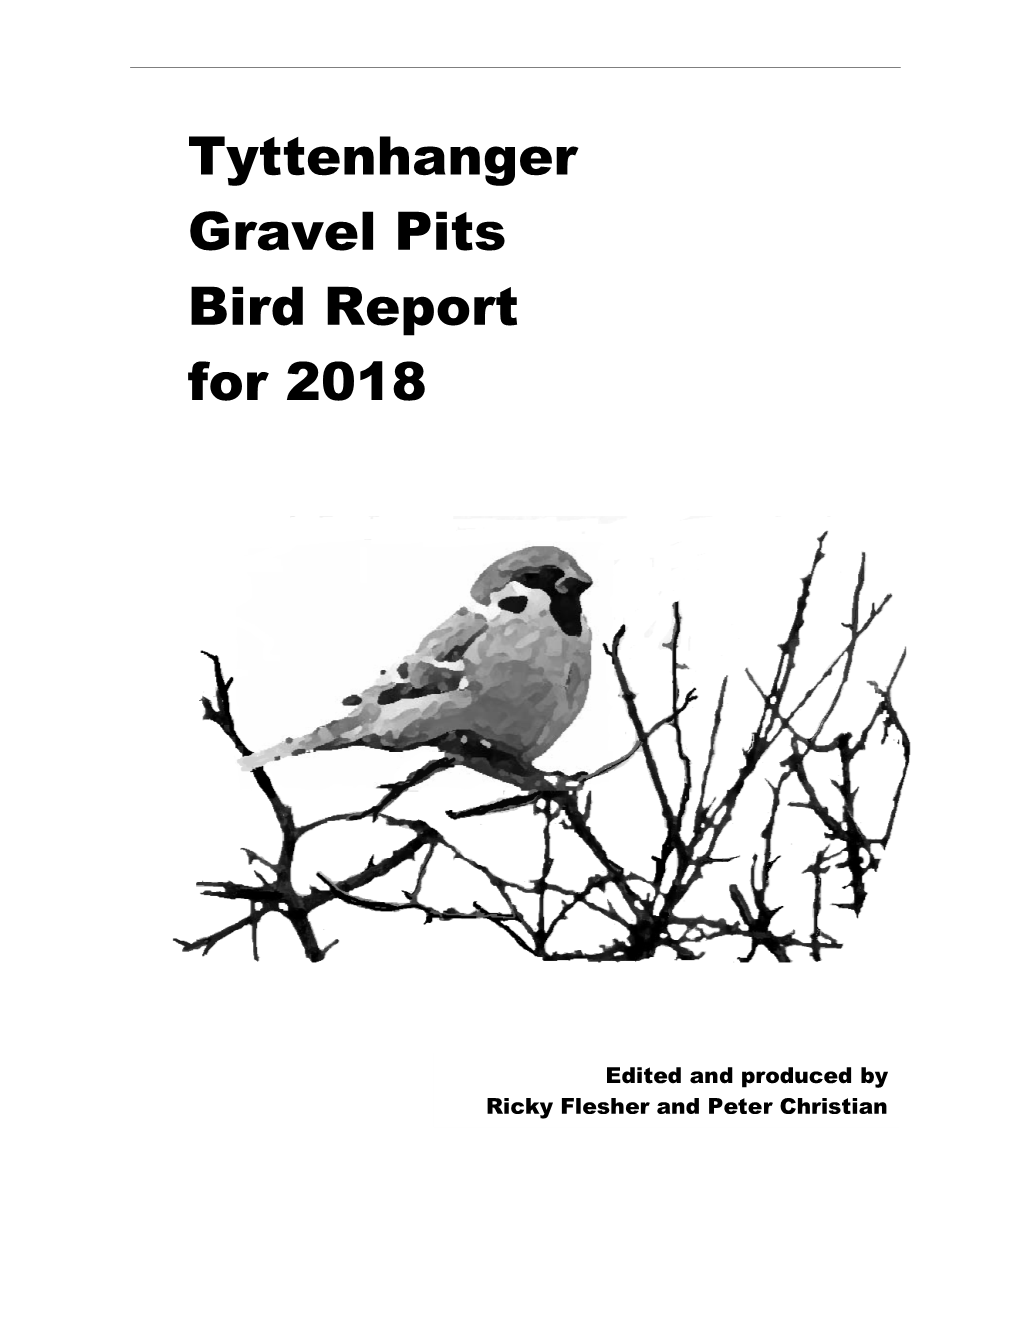 Tyttenhanger Gravel Pits Bird Report for 2018